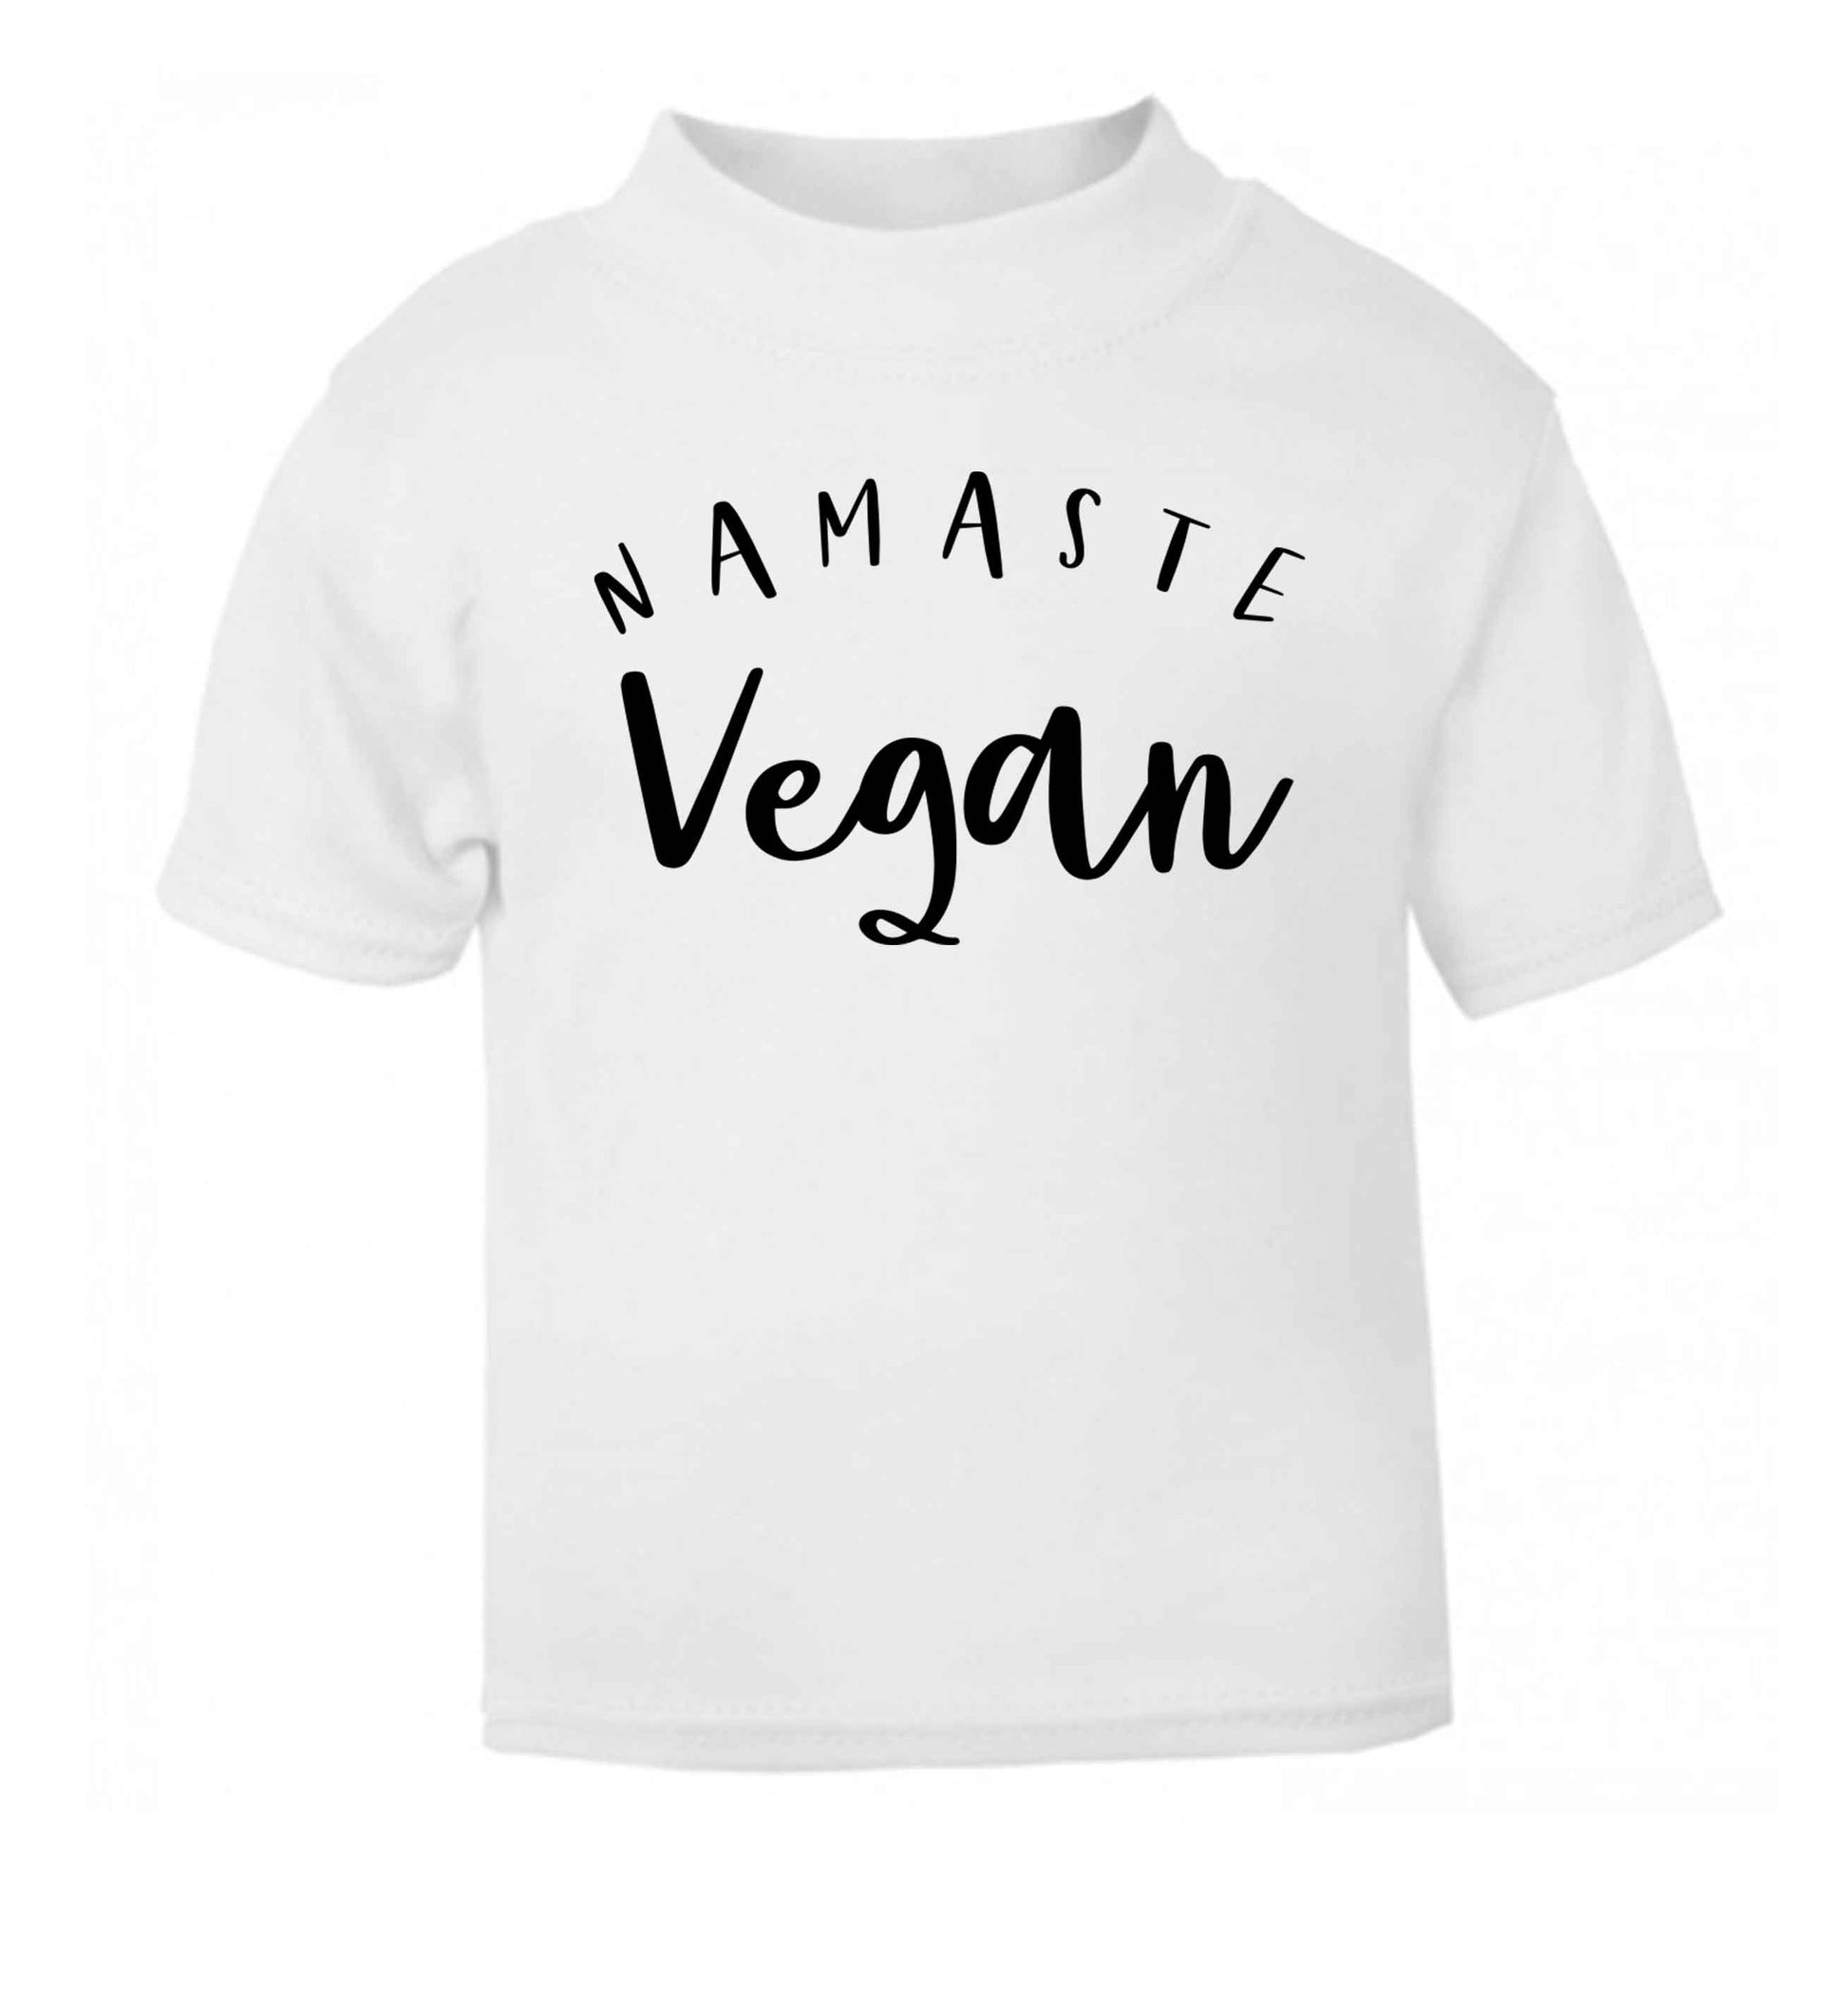 Namaste vegan white Baby Toddler Tshirt 2 Years